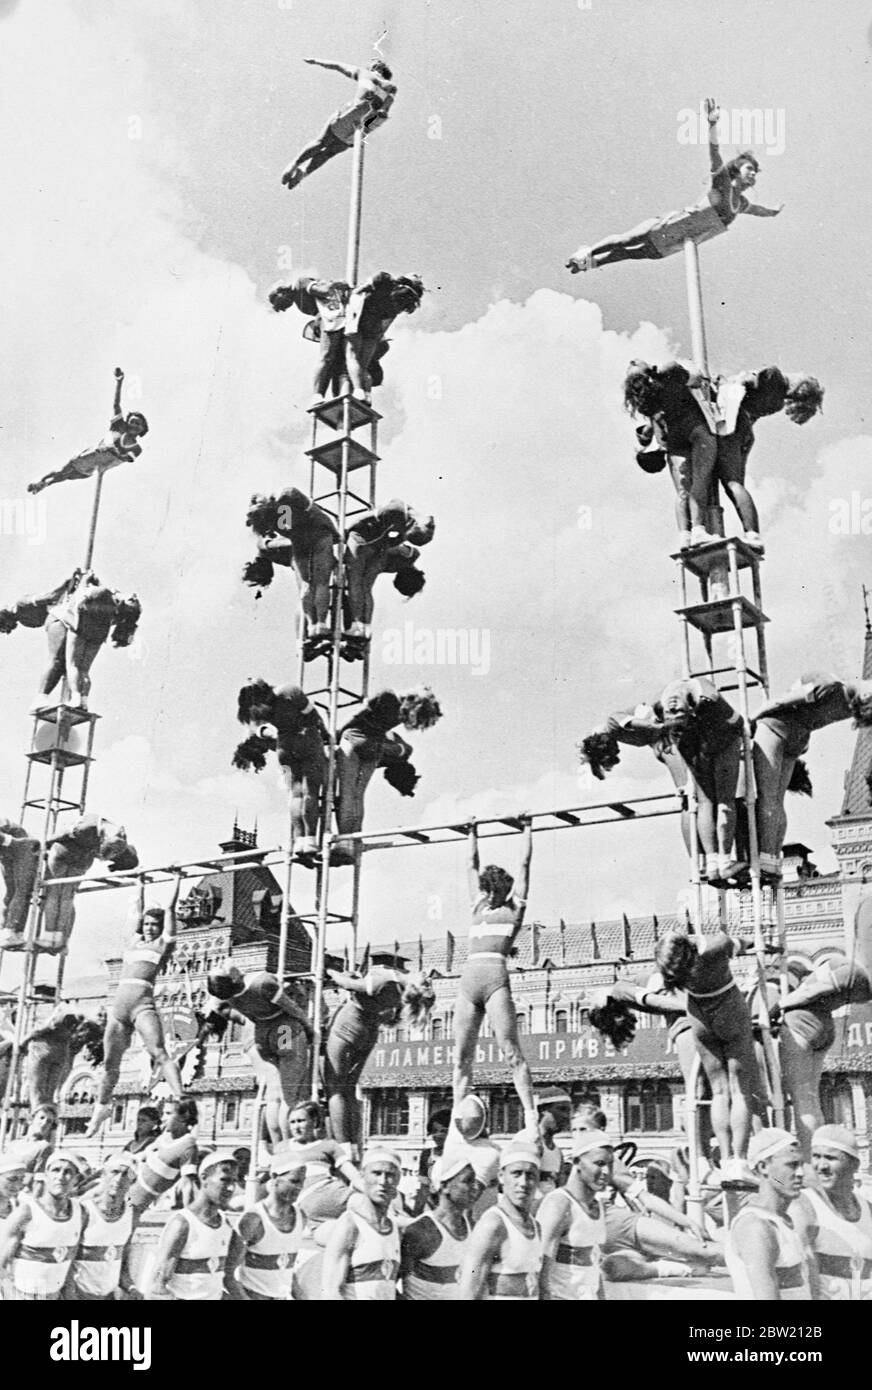 Mädchen Mitglieder ihrer Dynamo Sport Society of Moscow Form Pyramiden, wie sie über den Roten Platz von männlichen Athleten getragen werden. Wo sie 40,000 Athleten aus den 11 Republiken, die die Sowjetunion bilden, trat triumphierend über den Roten Platz Moskau, Den 20. Jahrestag der Revolution und deren Inbetriebnahme der neuen Stalin-Verfassung zu feiern. In der Parade waren Vertreter aller Arten von Sport von d Gymnastik zu Jäger mit Adler. 15 Juli 1937 Stockfoto